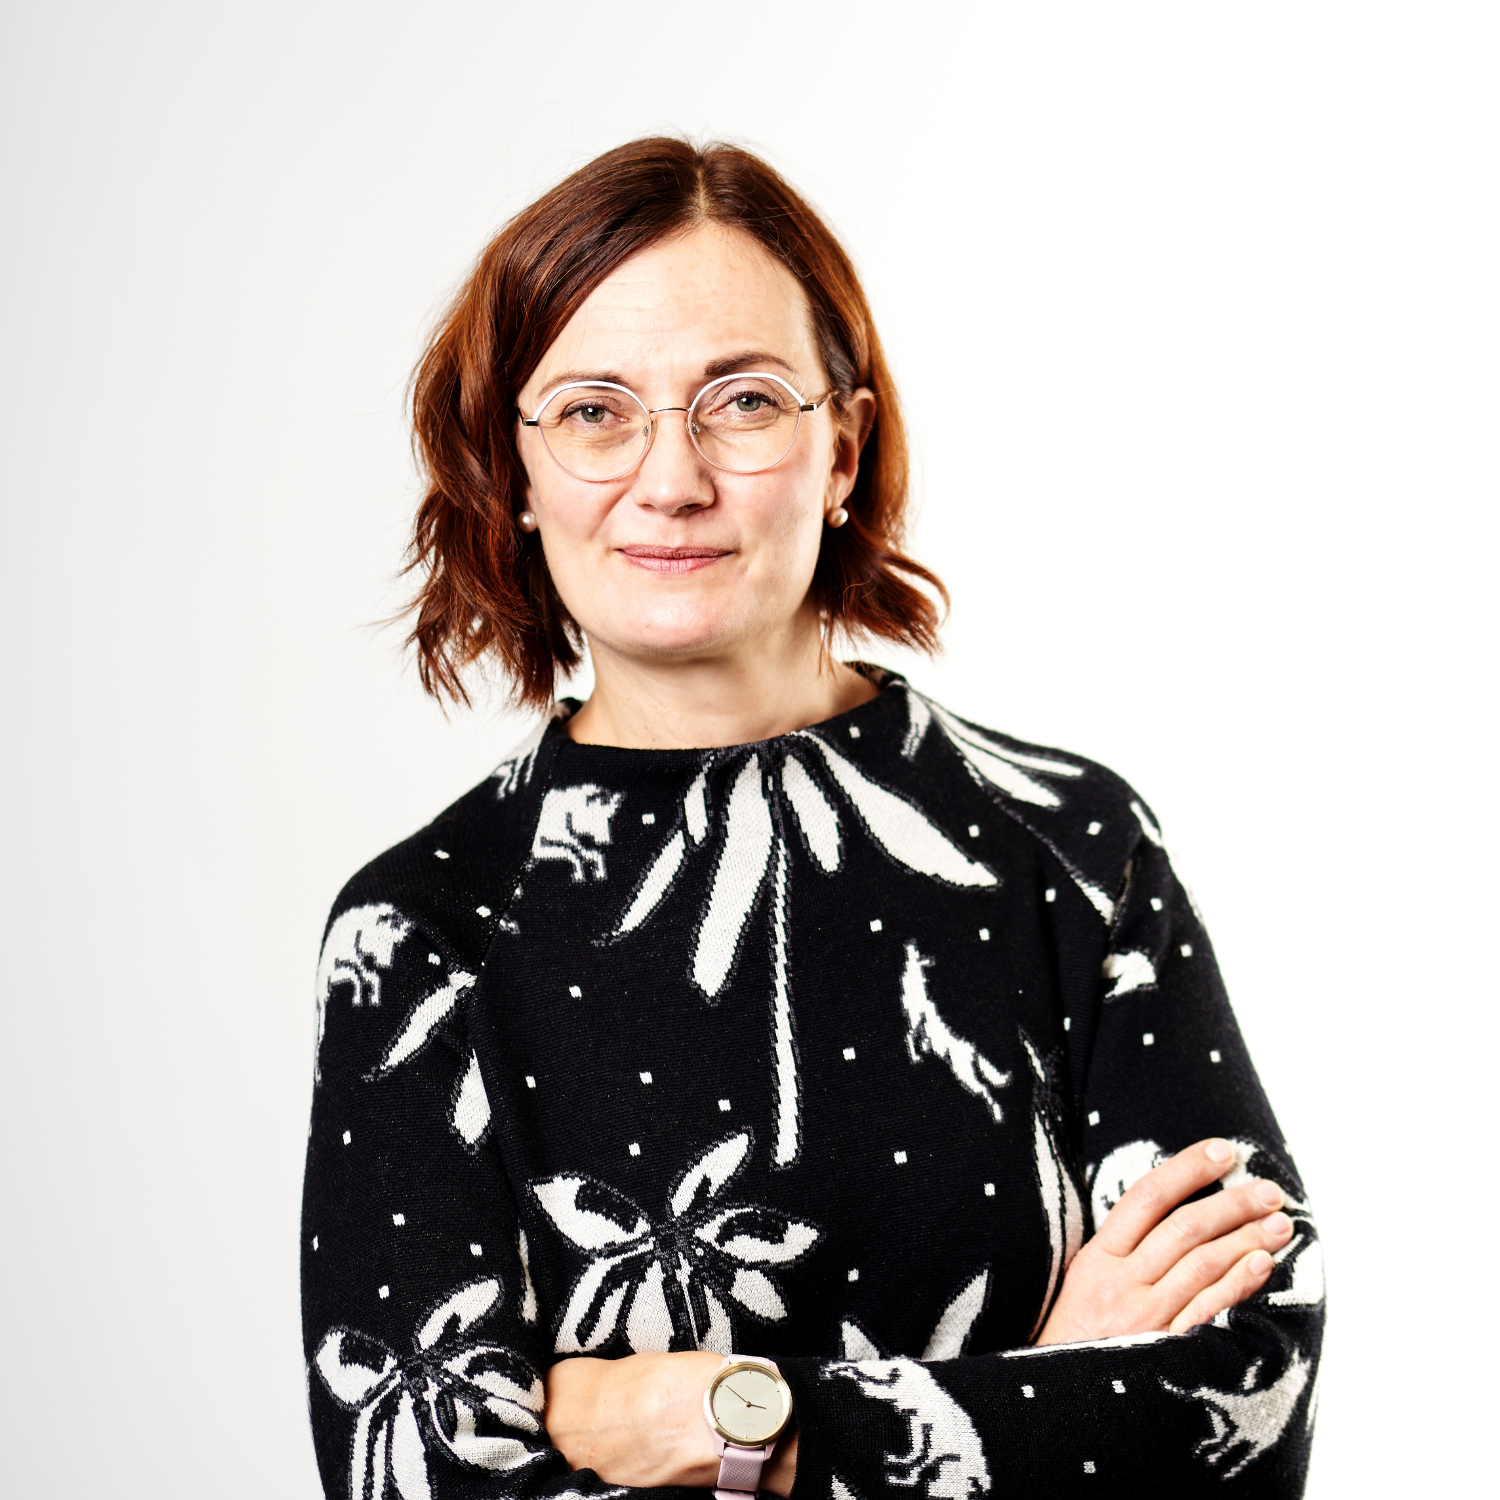 Anni Mikkonen (kuva: Juha Kylmälahti)